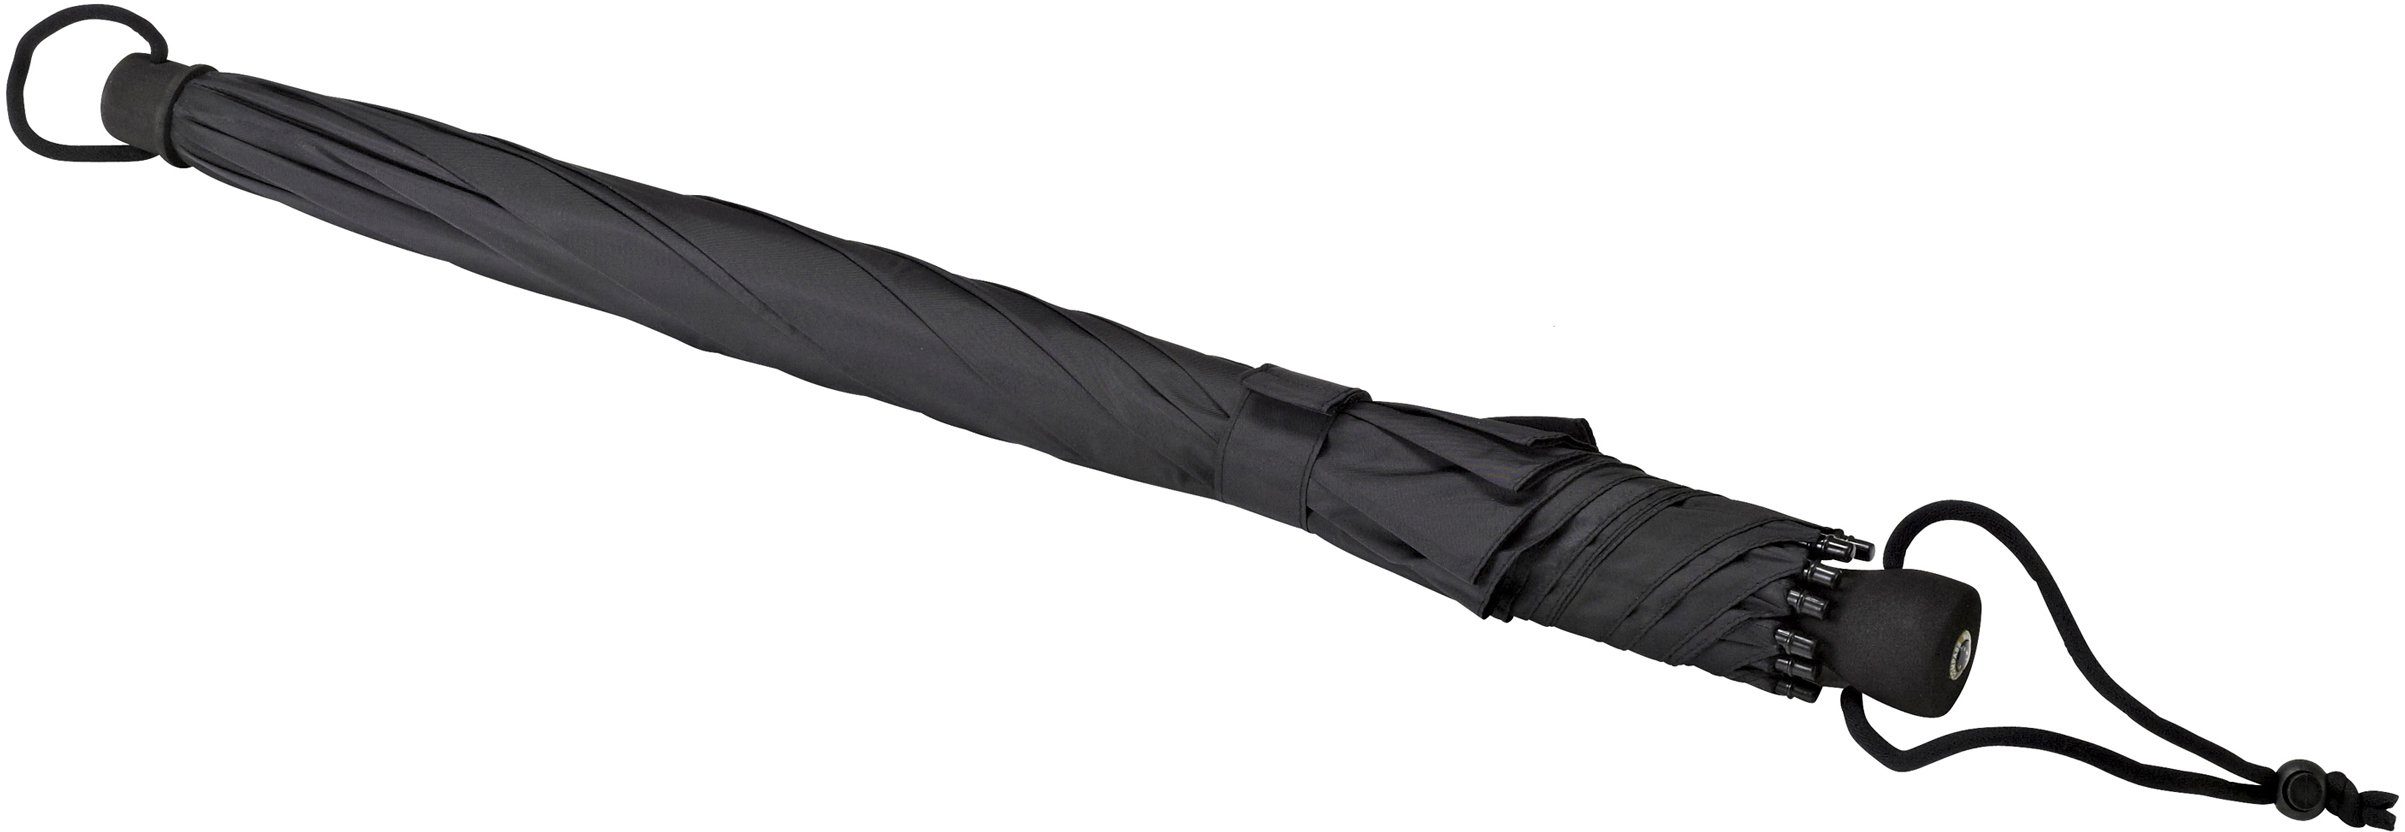 Kompass und extra schwarz stabil, Stockregenschirm outdoor, mit integriertem Schultertragegurt EuroSCHIRM® birdiepal®